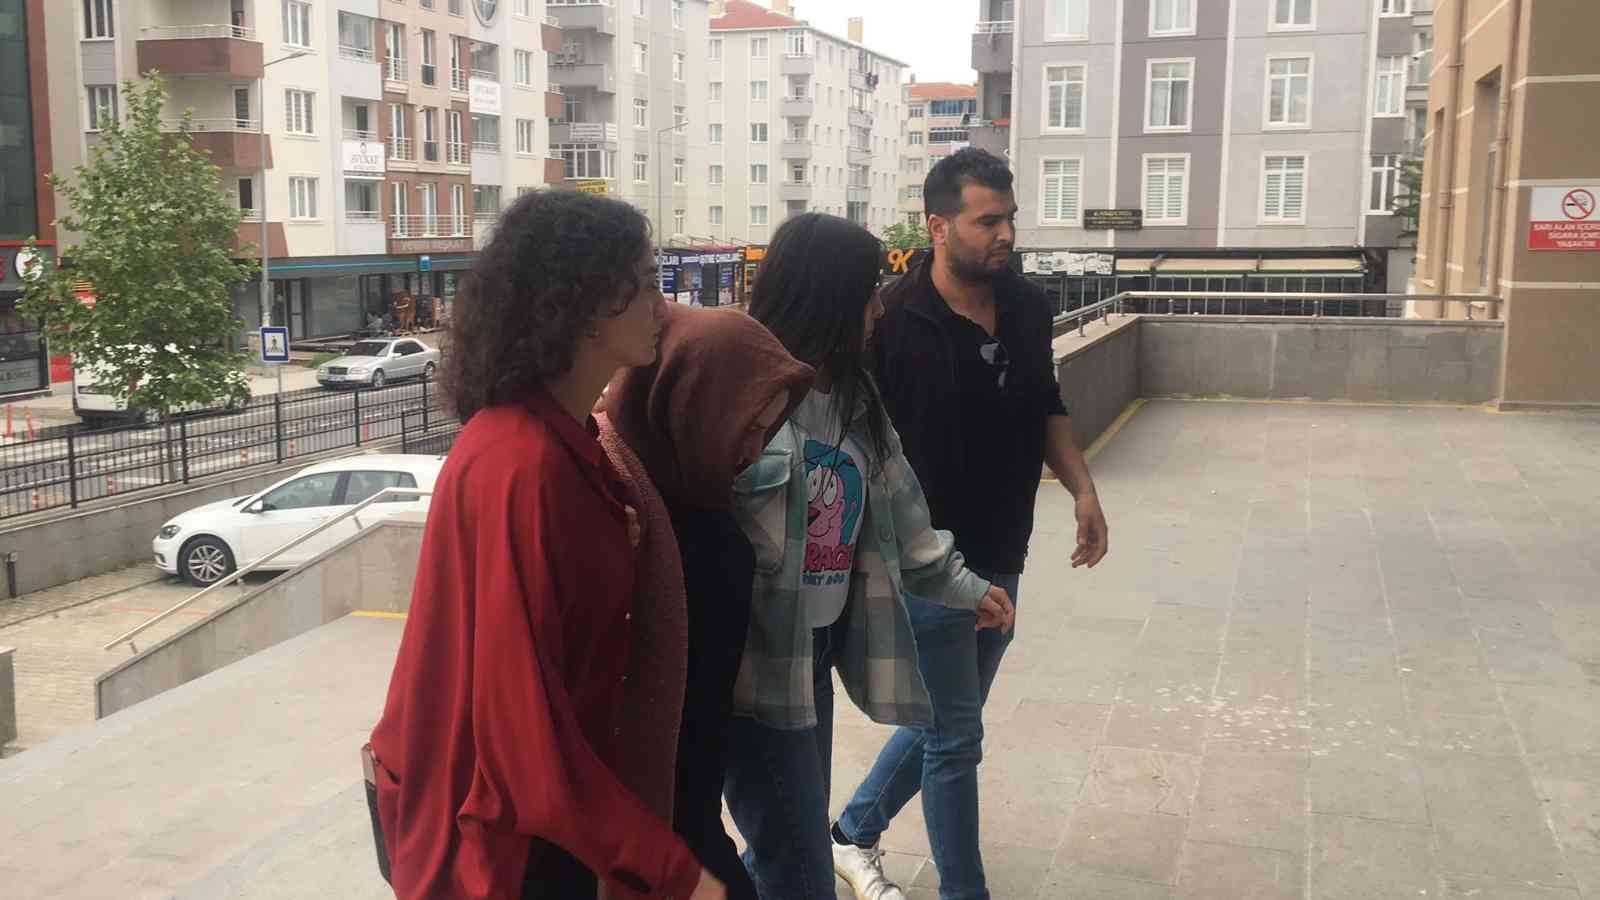 Tekirdağ’ın Çerkezköy ilçesinde 6 yaşındaki kızını öldüren 25 yaşındaki kadın, adliyeye sevk edildi. Vahşeti işleyen kadının, olaydan sonra ...